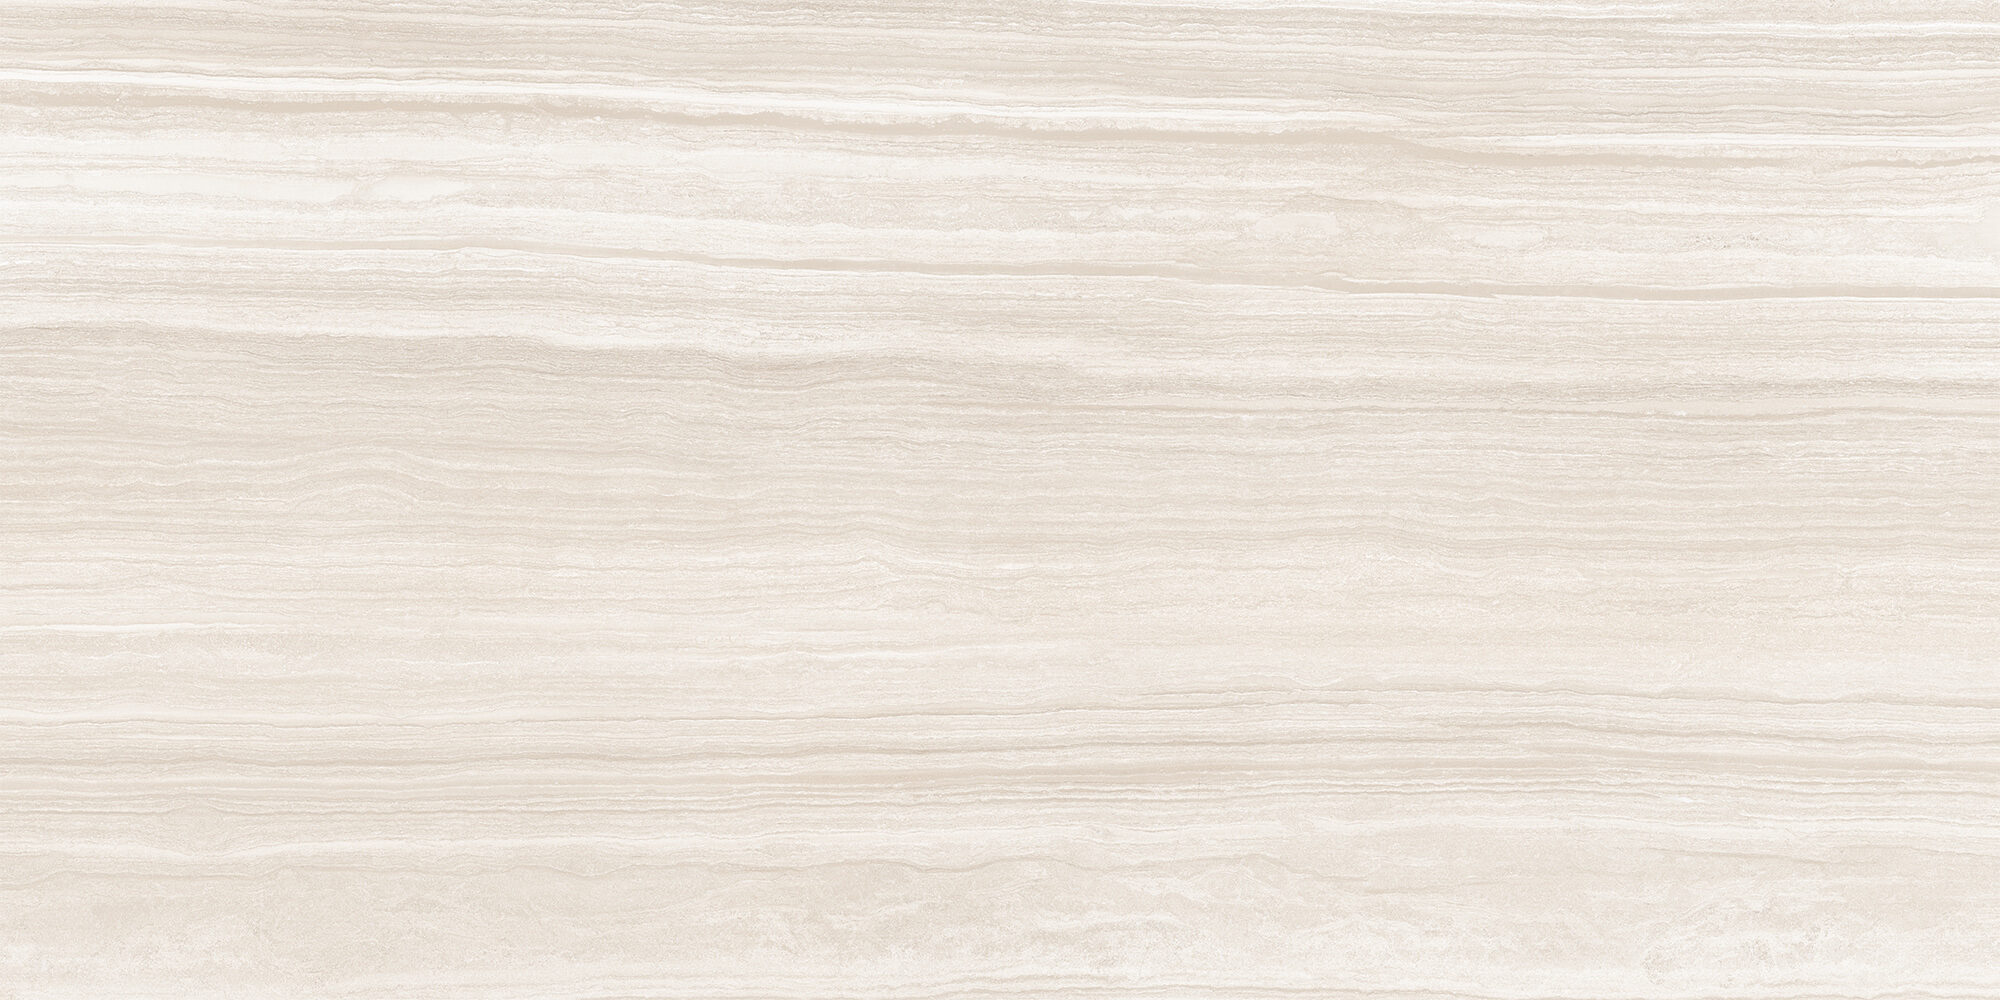 tile-silky-beige-sammys-design-flooring-a